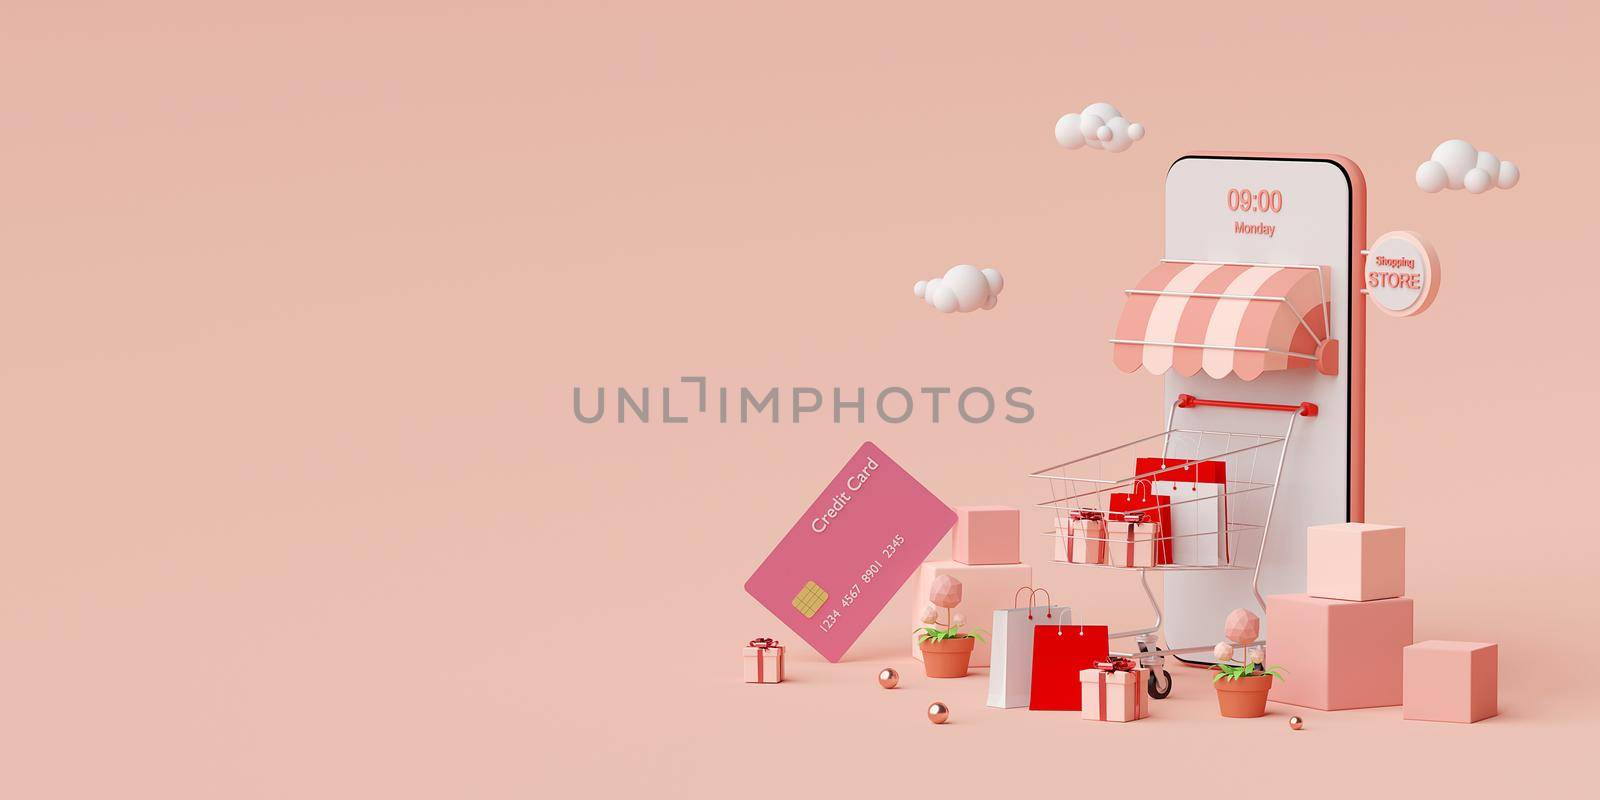 Shopping online on smartphone concept, 3d rendering by nutzchotwarut